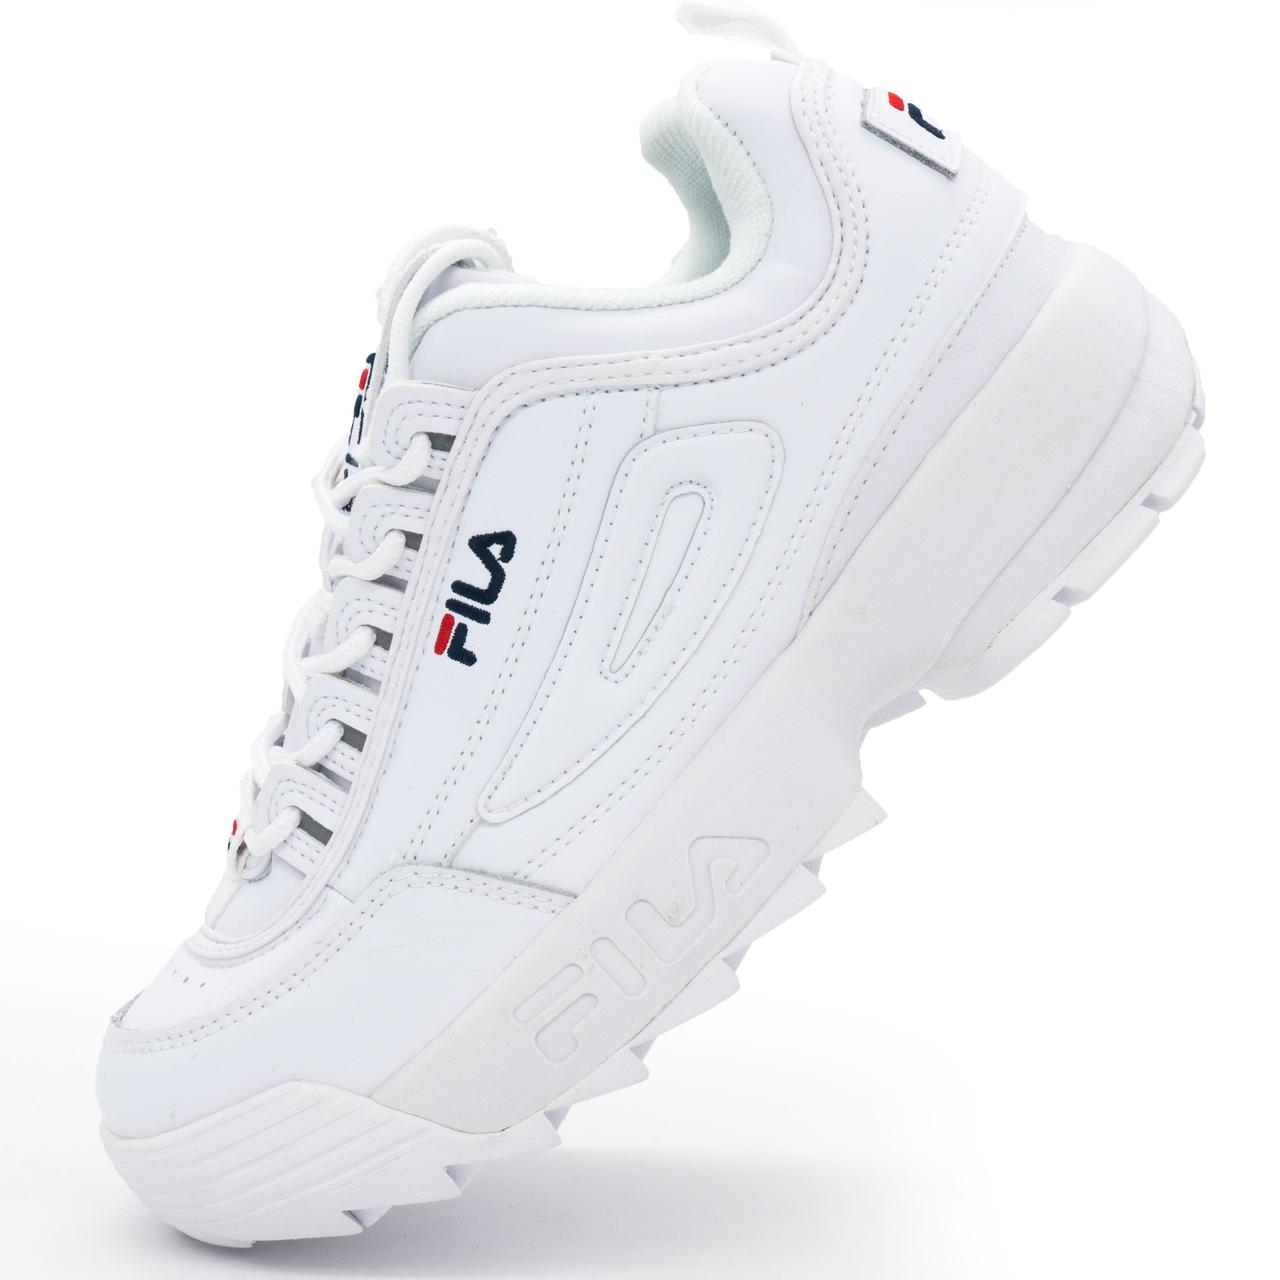 Білі кросівки FILA Disruptor 2. Топ якість! 39. Розміри в наявності: 39, 41.